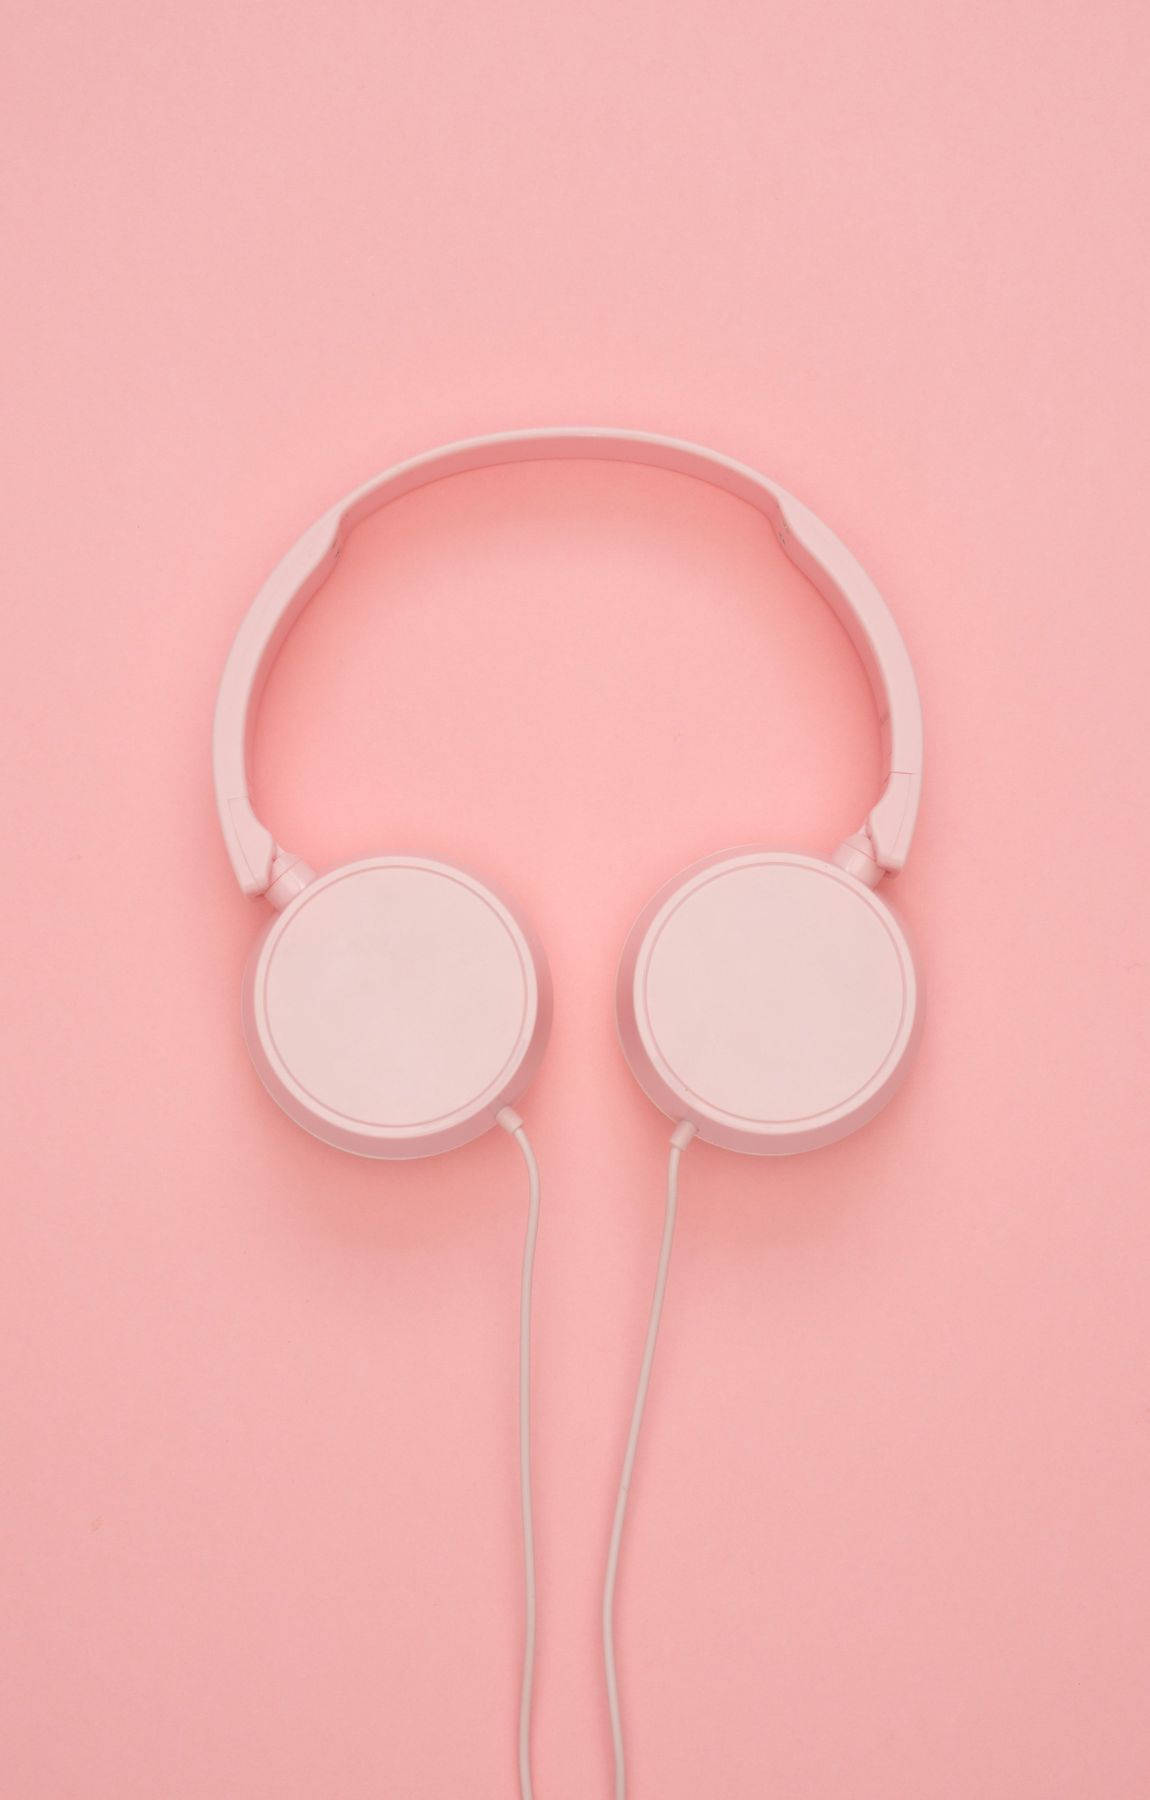 Baby Pink Headphones Wallpaper